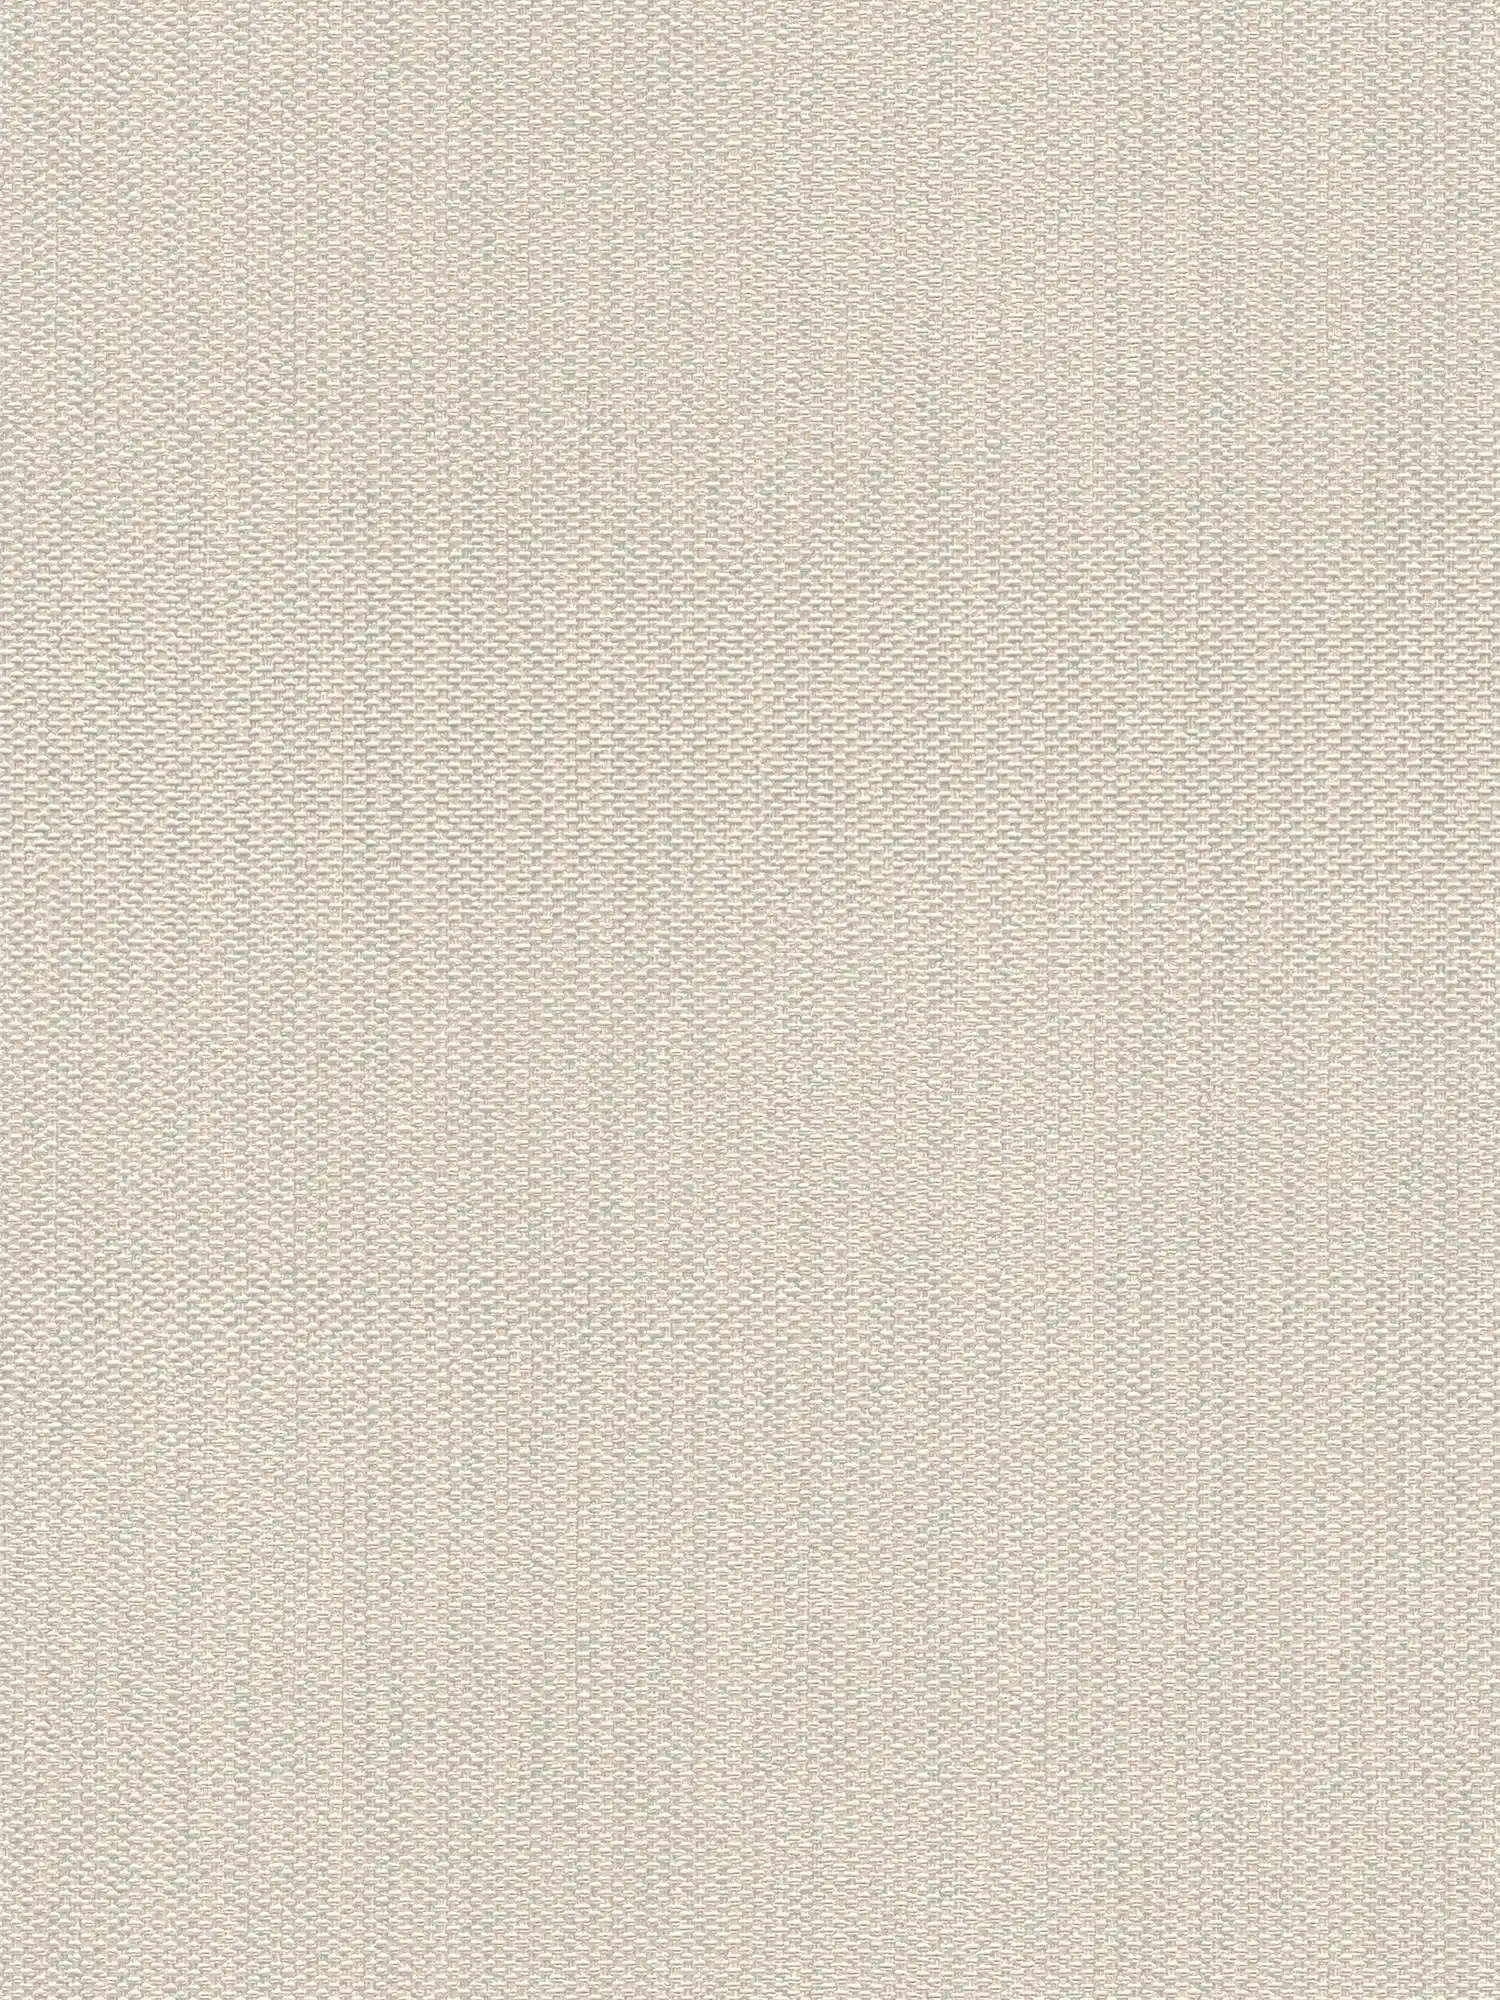 papier peint en papier intissé aspect textile - crème, gris
